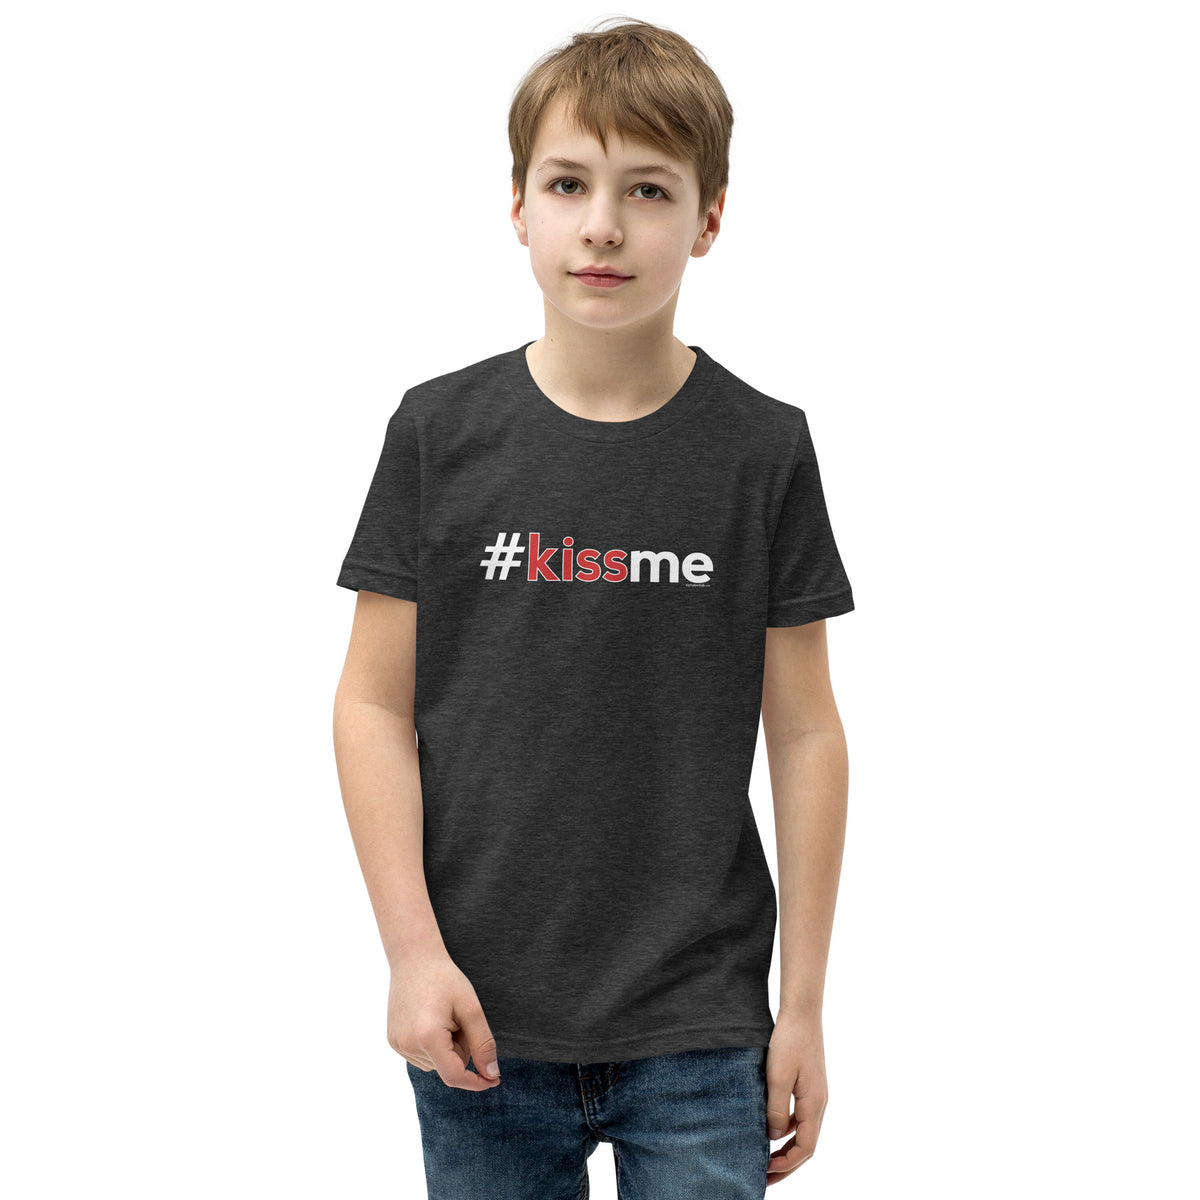 Hashtag Kiss Me Kids Valentine’s Day T-Shirt